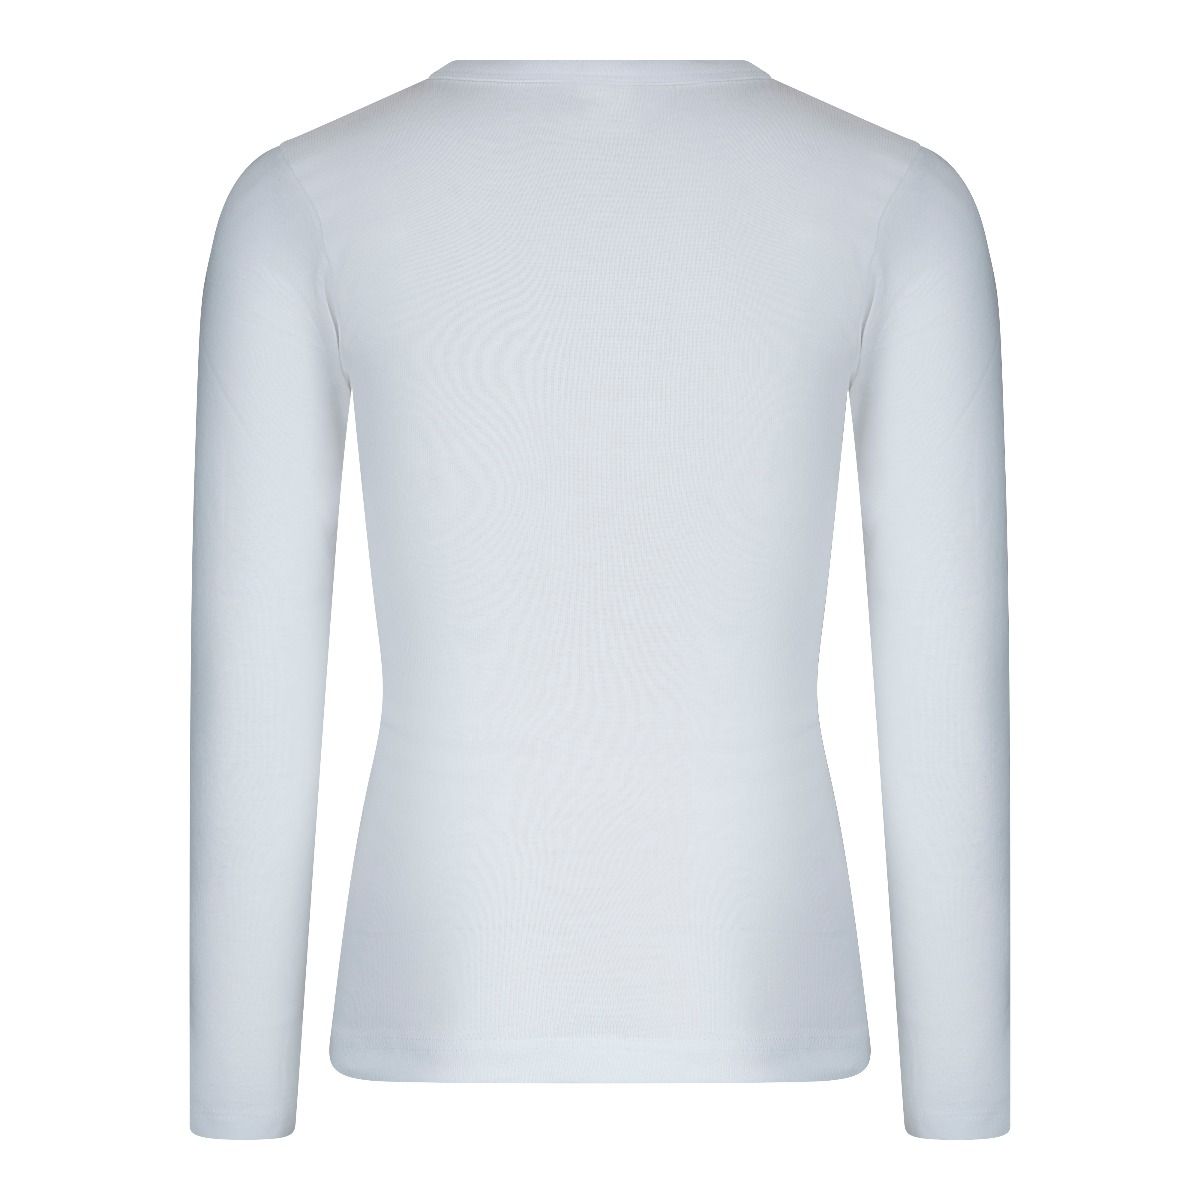 Netjes instant voordeel Beeren Jongens Shirt Lange Mouwen M3000 Wit - Beeren ondergoed